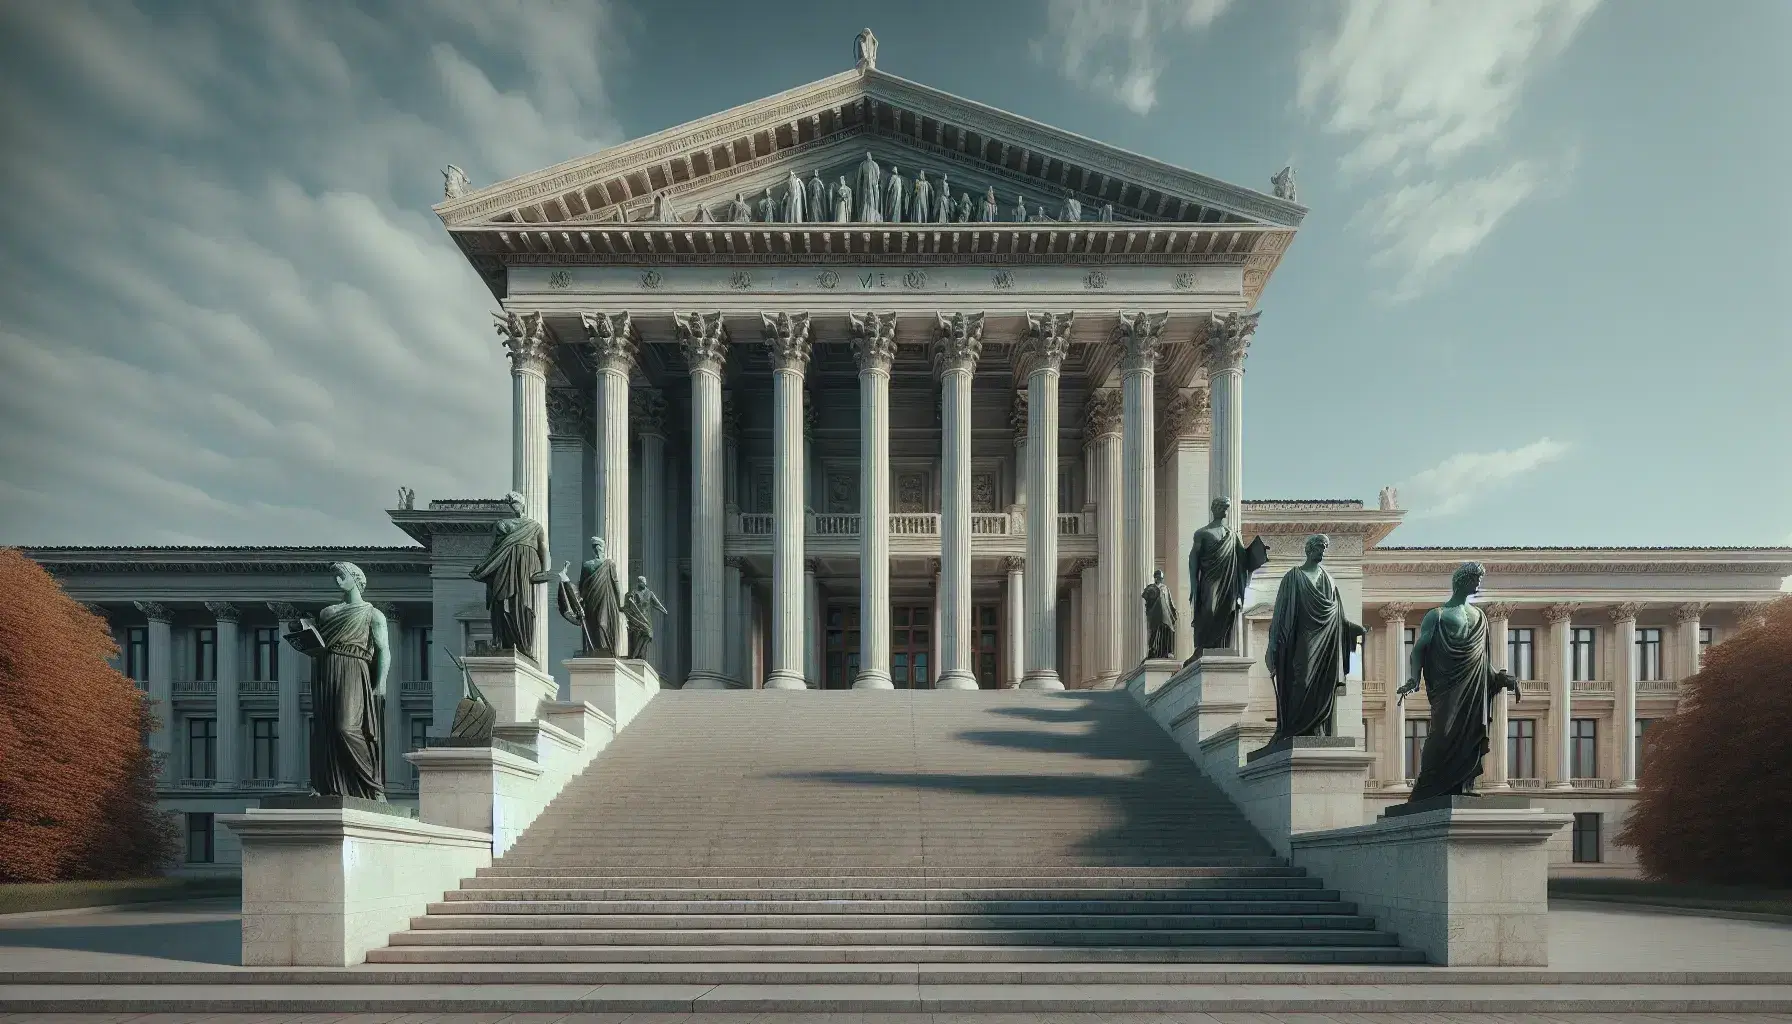 Edificio neoclásico con columnas y pedimento triangular bajo cielo azul, escalinata de piedra y estatuas de bronce con espada y libro.